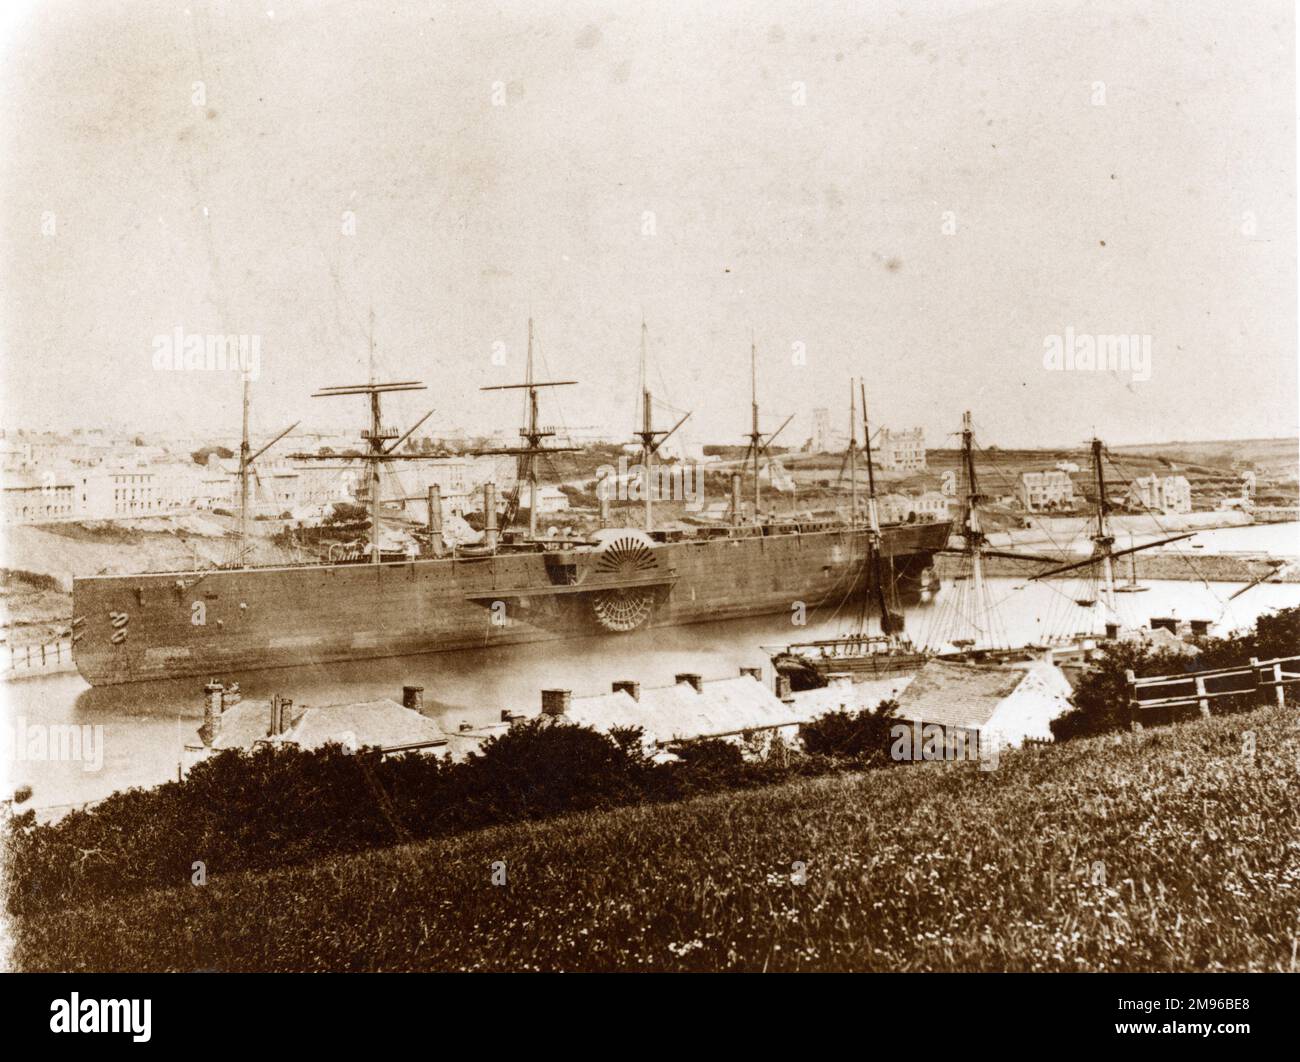 Brunels eisernes Segeldampfer, die SS Great Eastern, lag in den 1870er Jahren in Milford Haven, Pembrokeshire, South Wales. Das Schiff ist so groß, dass es die Länge von Hamilton Terrace überquert. Zu dieser Zeit wurde das Schiff für die Verlegung von U-Boot-Telegrafenkabeln benutzt. Sie wurde schließlich in 1889-1890 getrennt. Stockfoto